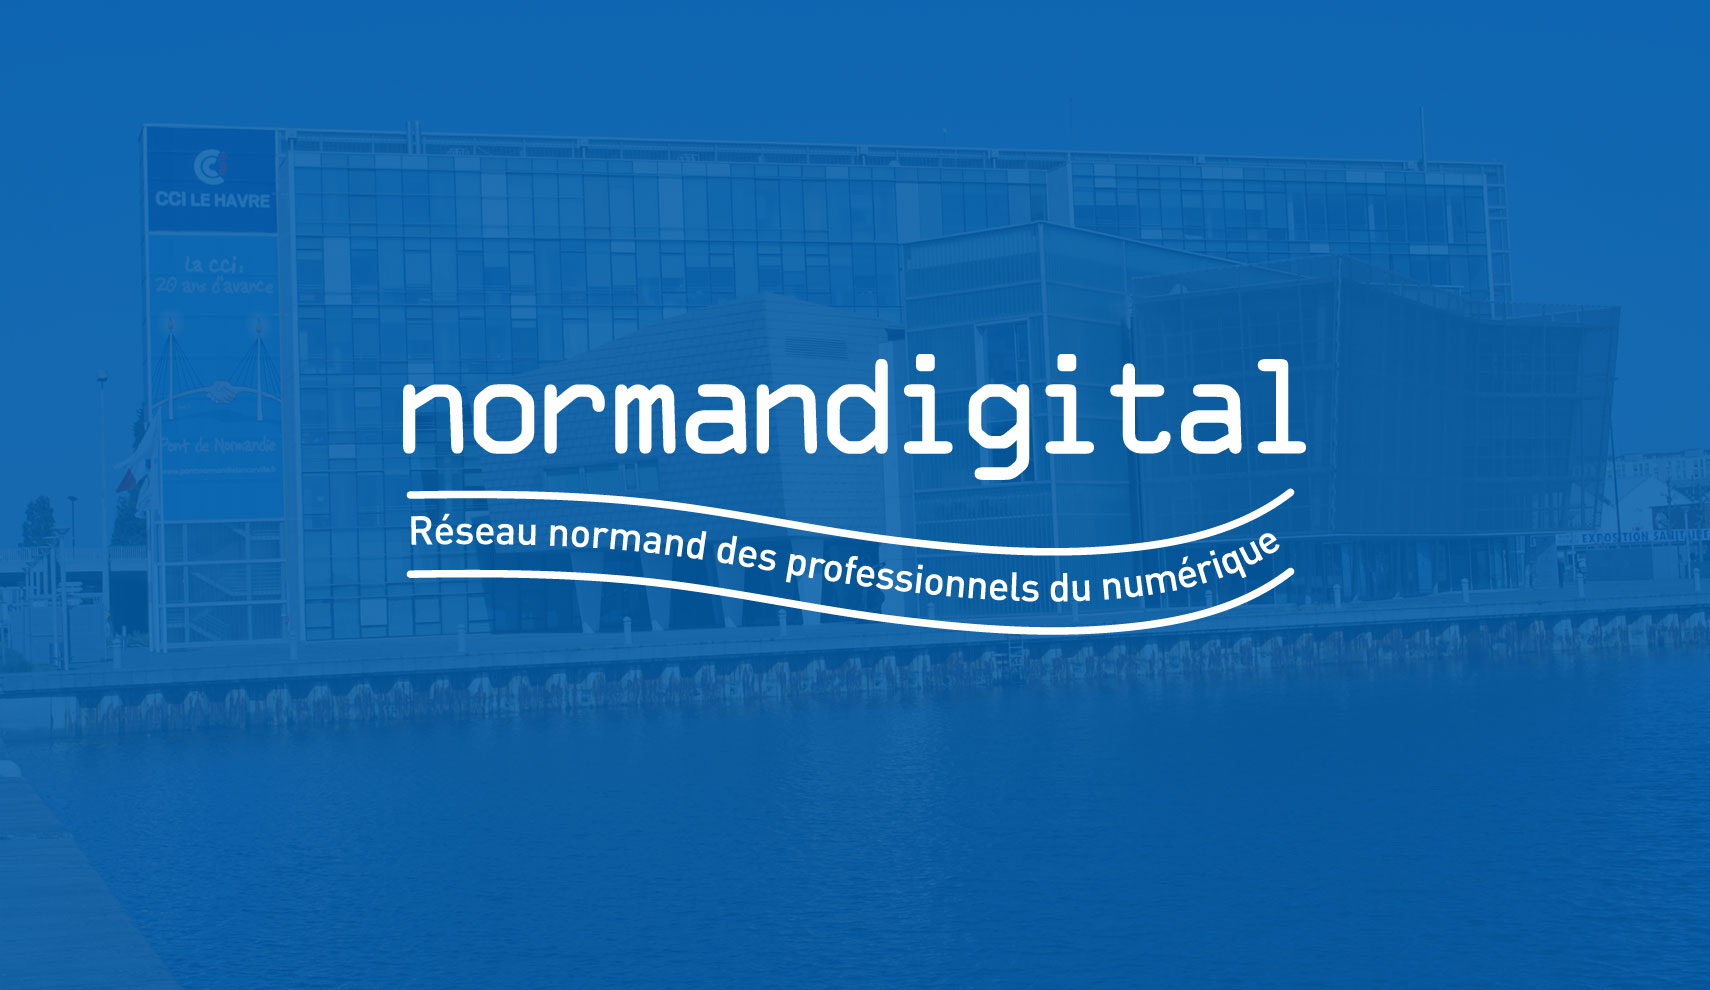 Siatel présente Gargantua - Pour sa 5ème édition, le Salon Normandigital accueille Siatel au Havre